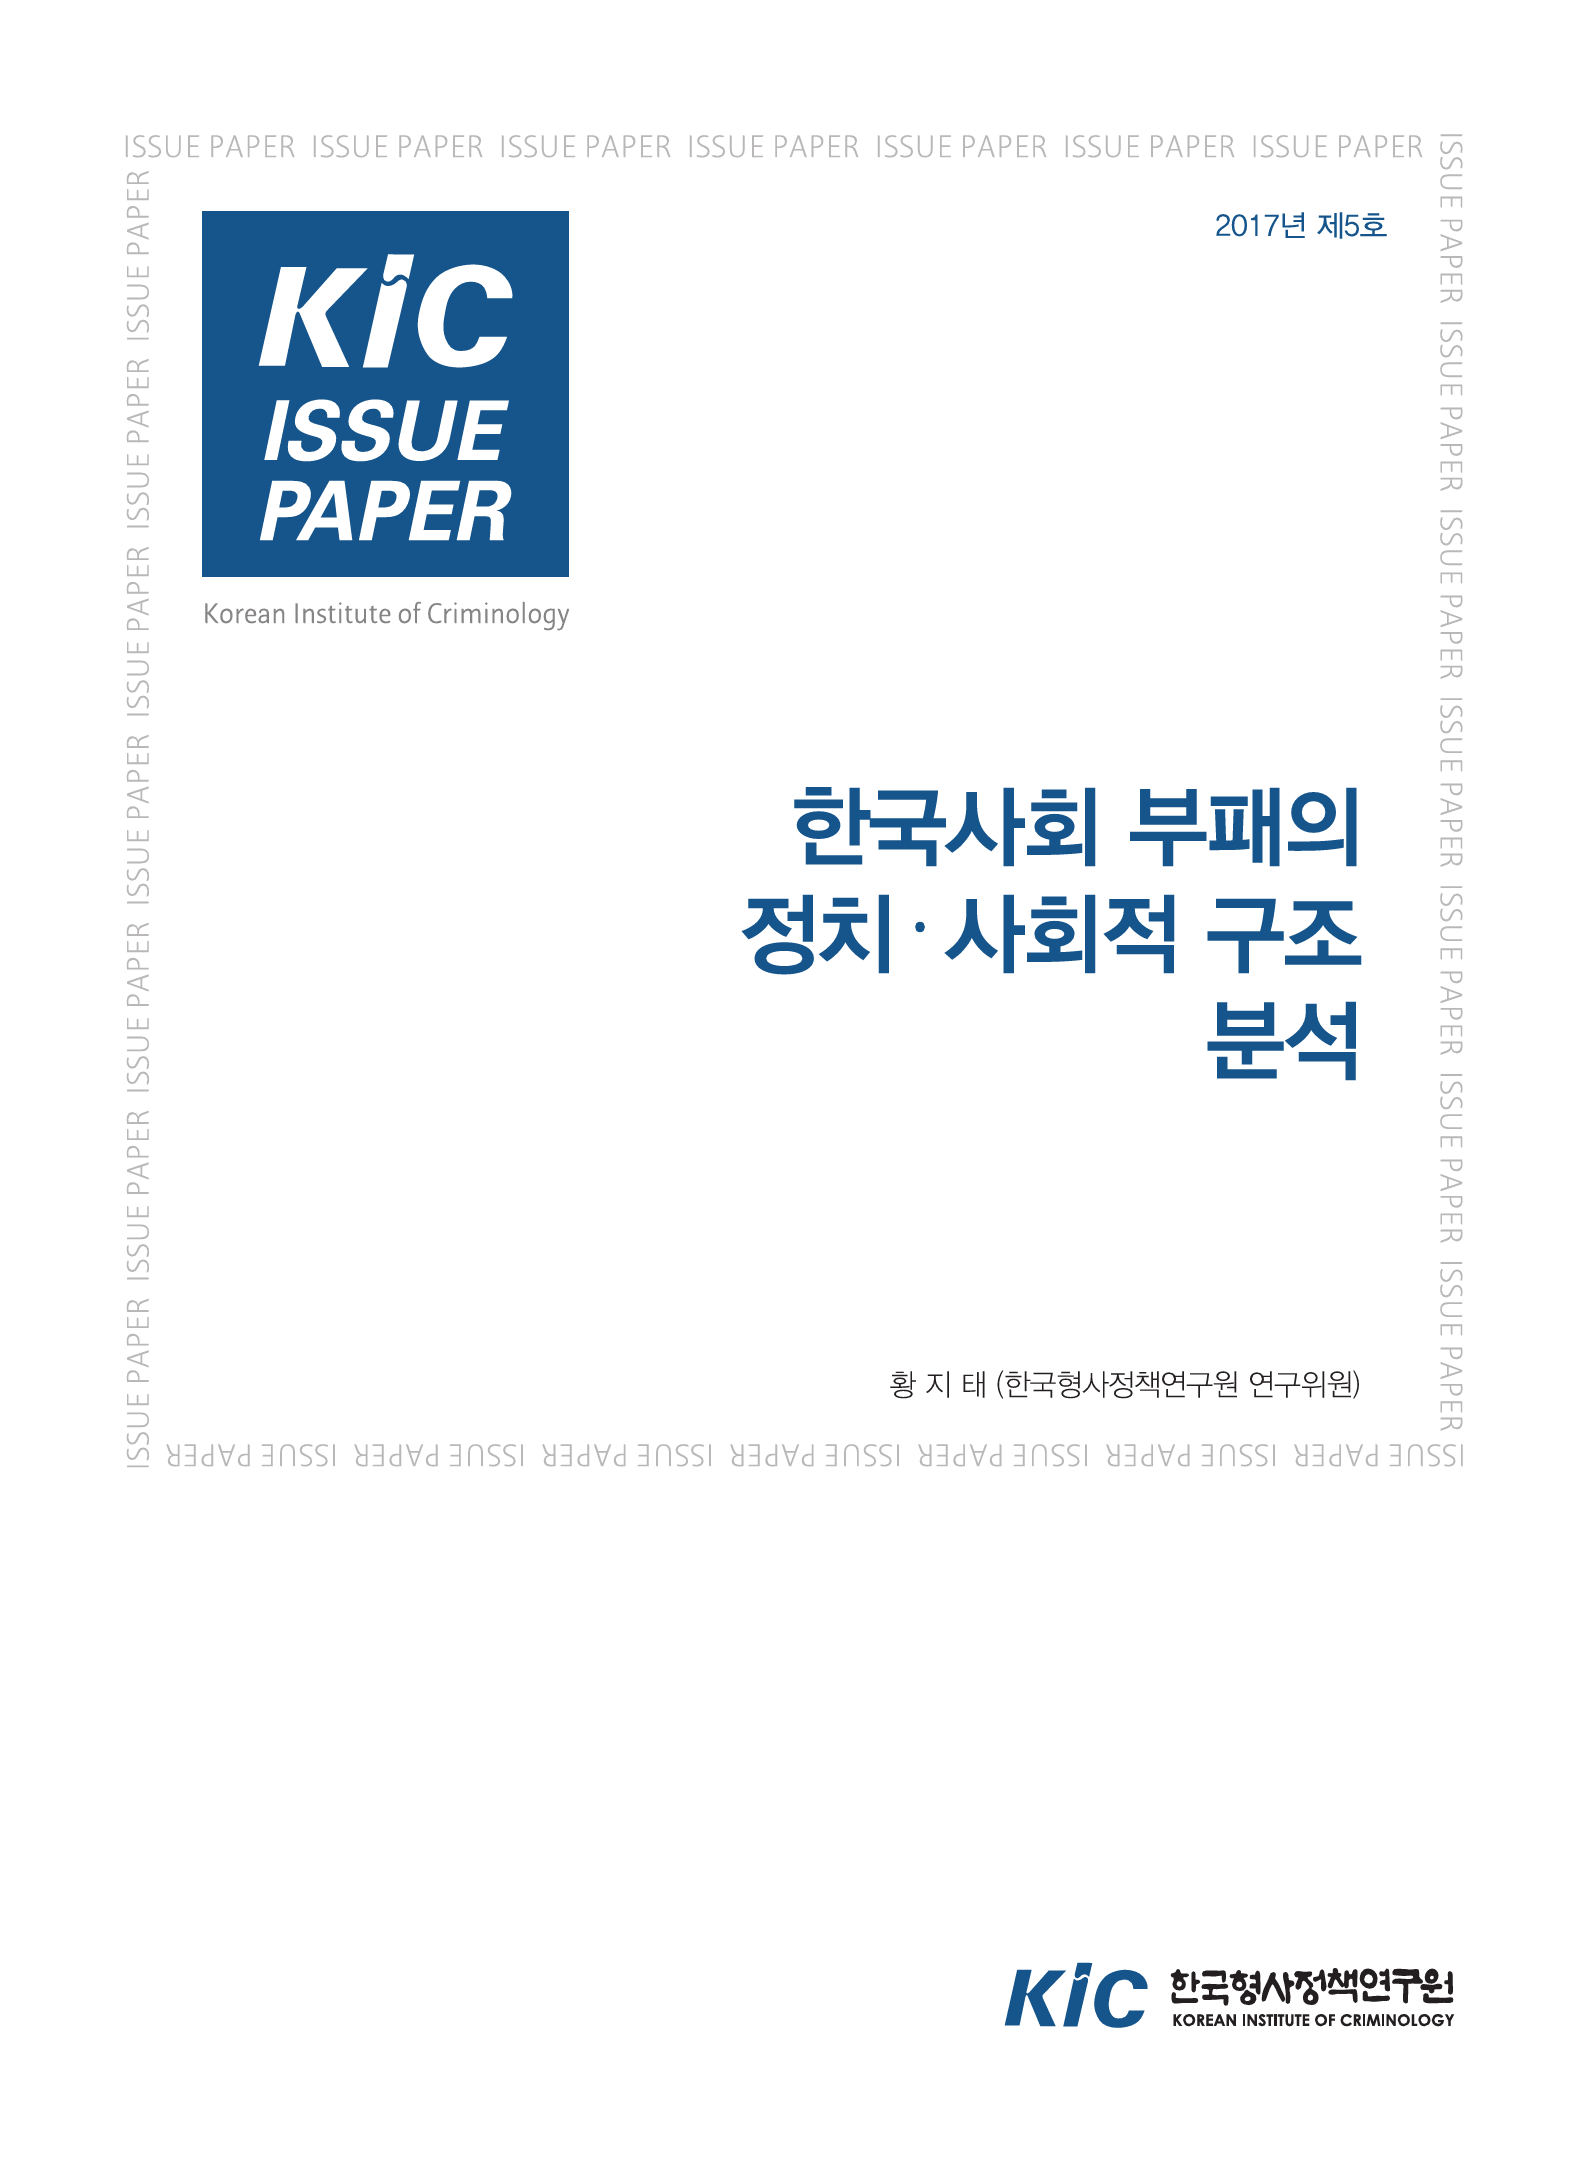 한국사회 부패의 정치․사회적 구조 분석 사진